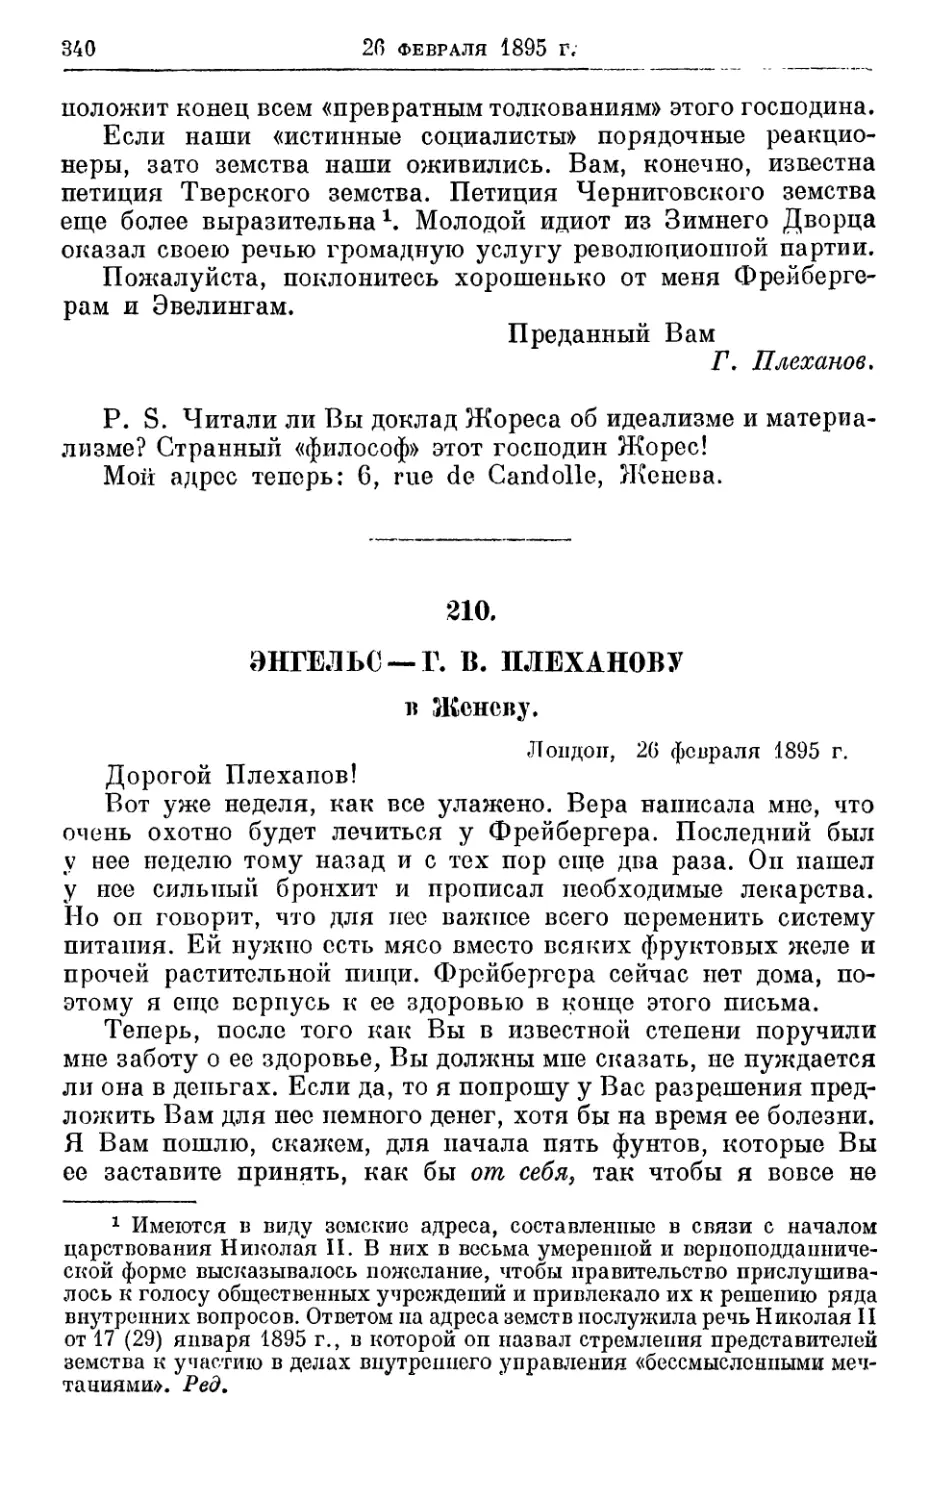 210. Энгельс — Г. В. Плеханову, 26 февраля 1895г